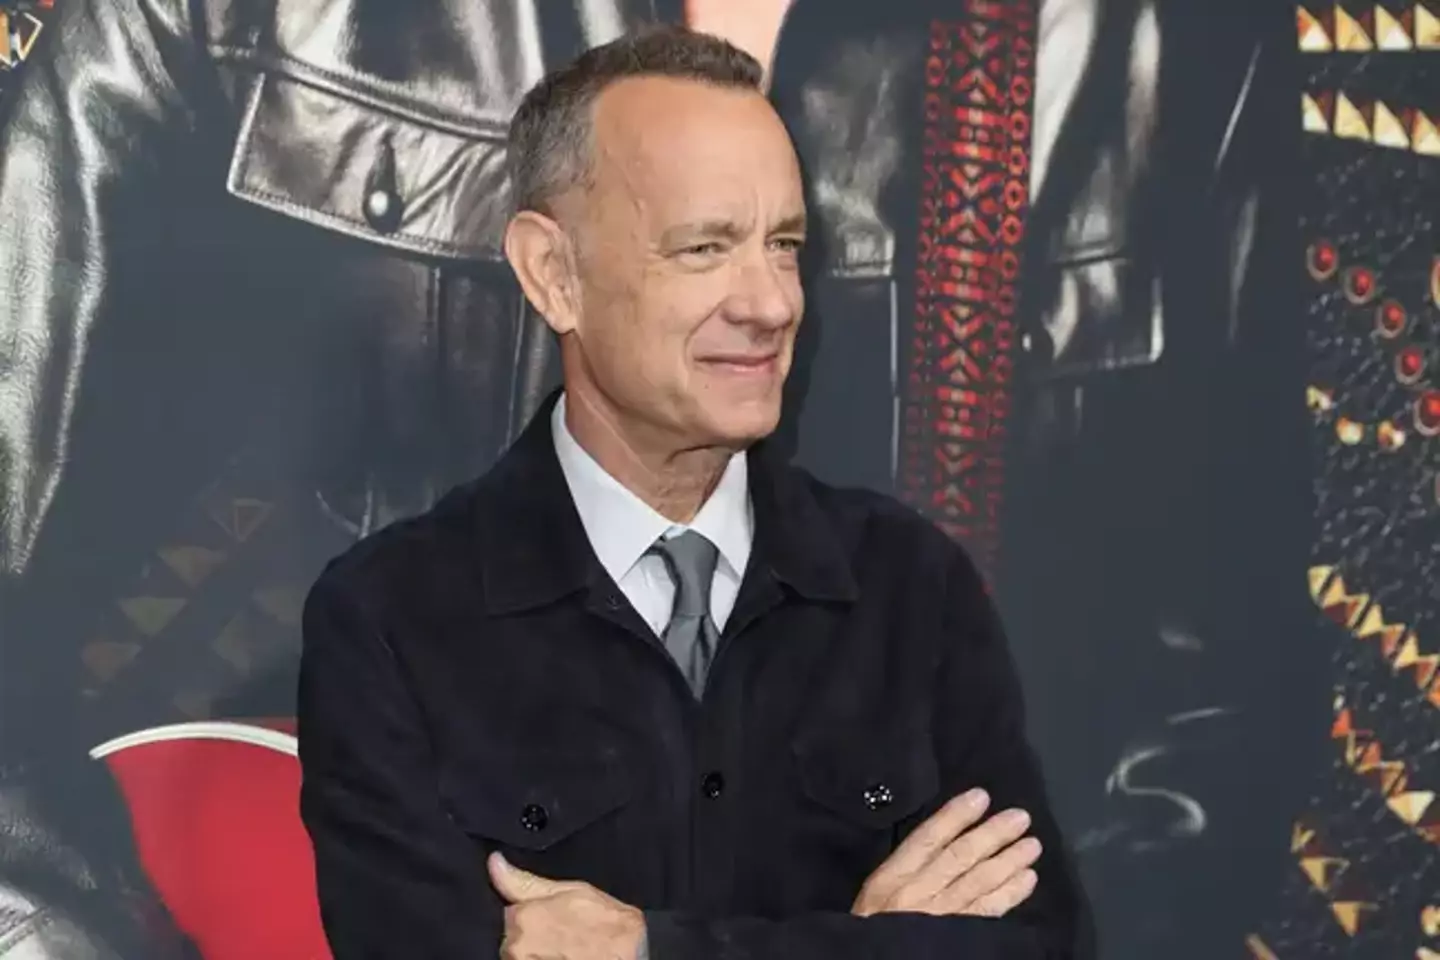 Tom Hanks described the Da Vinci Code films as 'hooey'.